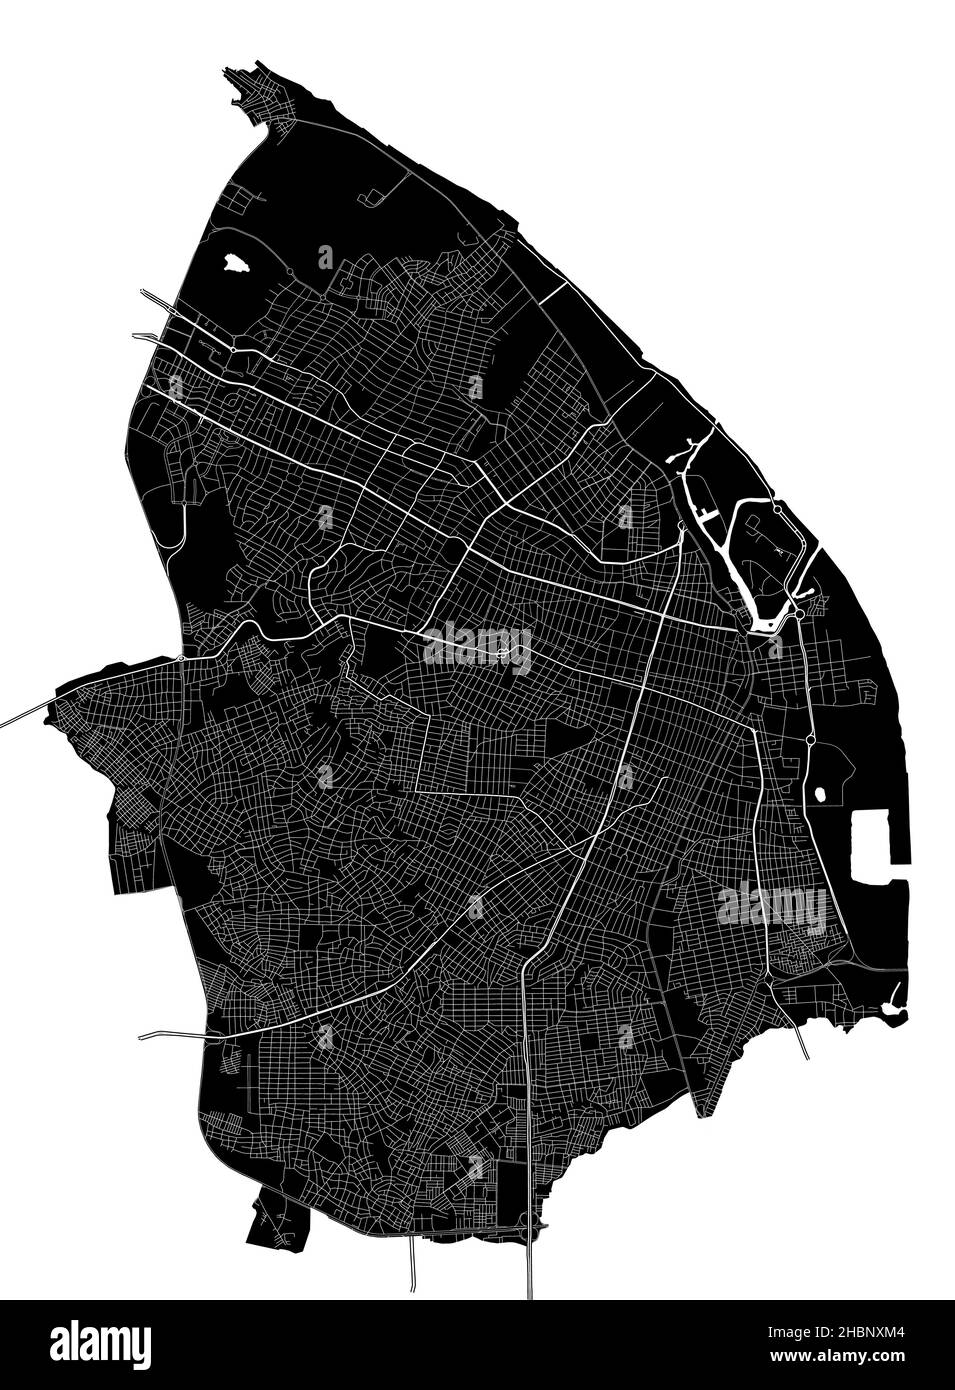 Barranquilla, Colombie, carte vectorielle haute résolution avec frontières de la ville, et chemins modifiables.La carte de la ville a été dessinée avec des zones blanches et des lignes pour mai Illustration de Vecteur